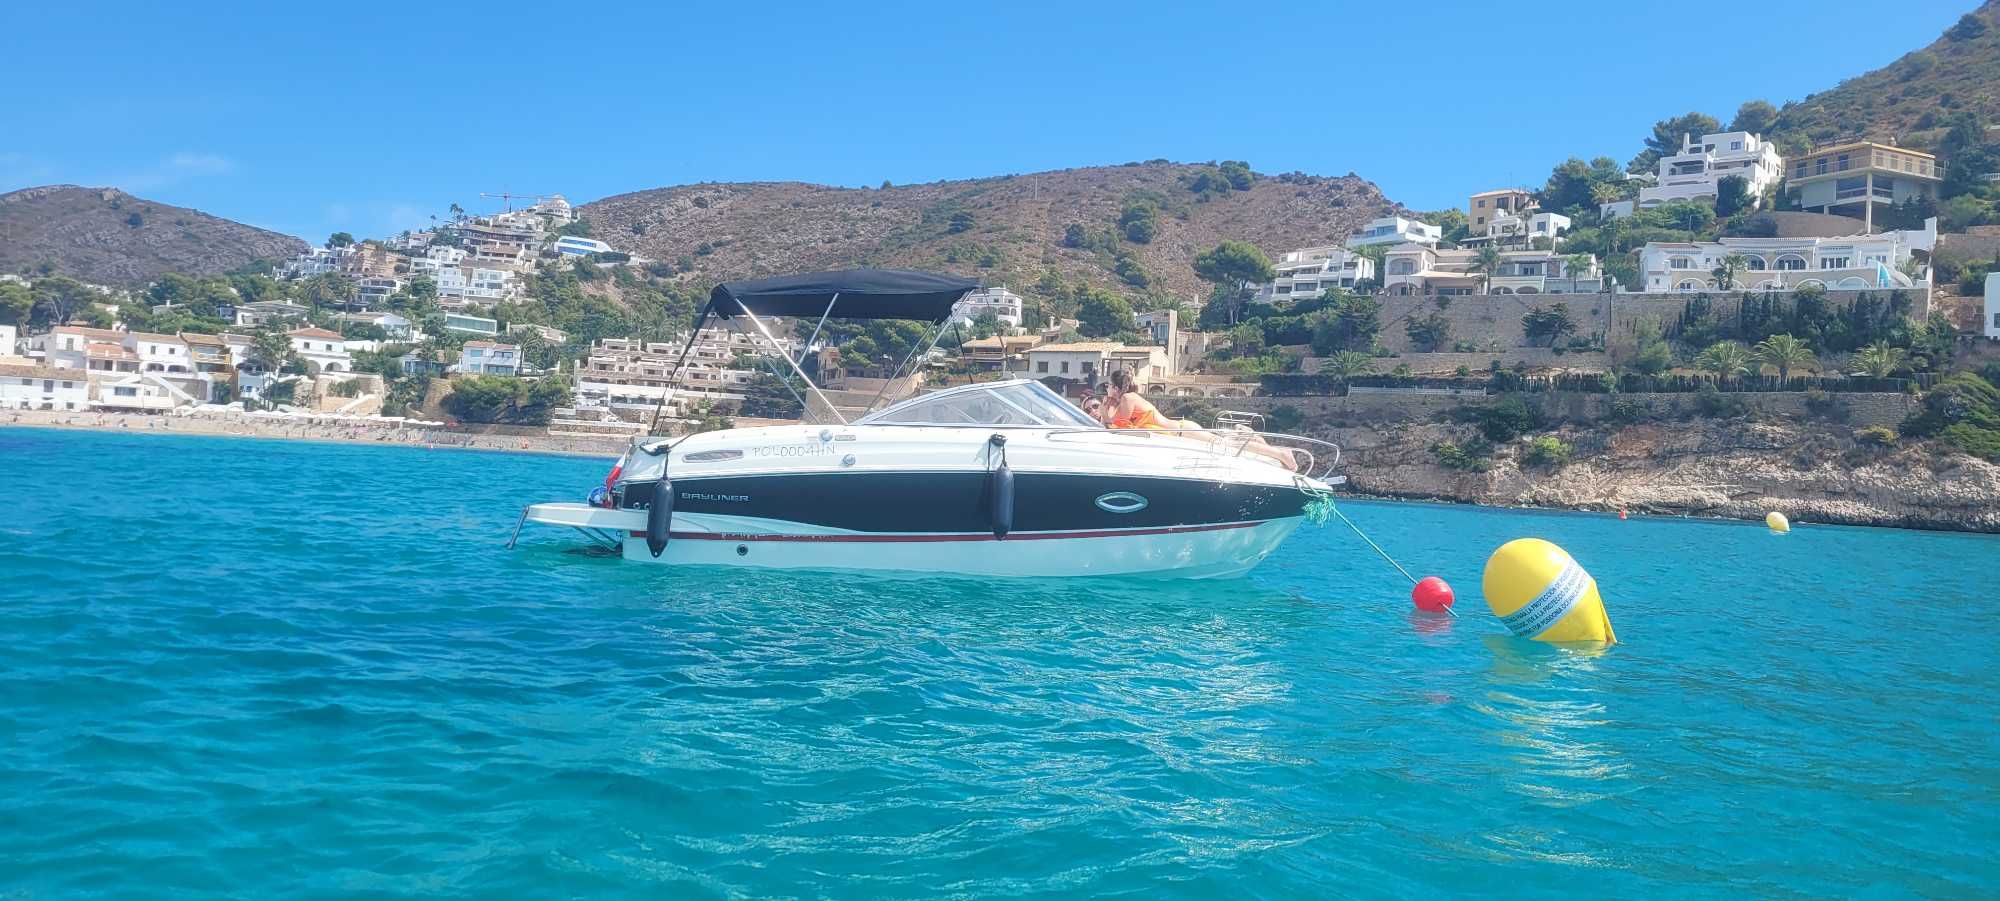 2016 BAYLINER 642 CUDDY łódz motorowa jacht motorowy motorówka FV